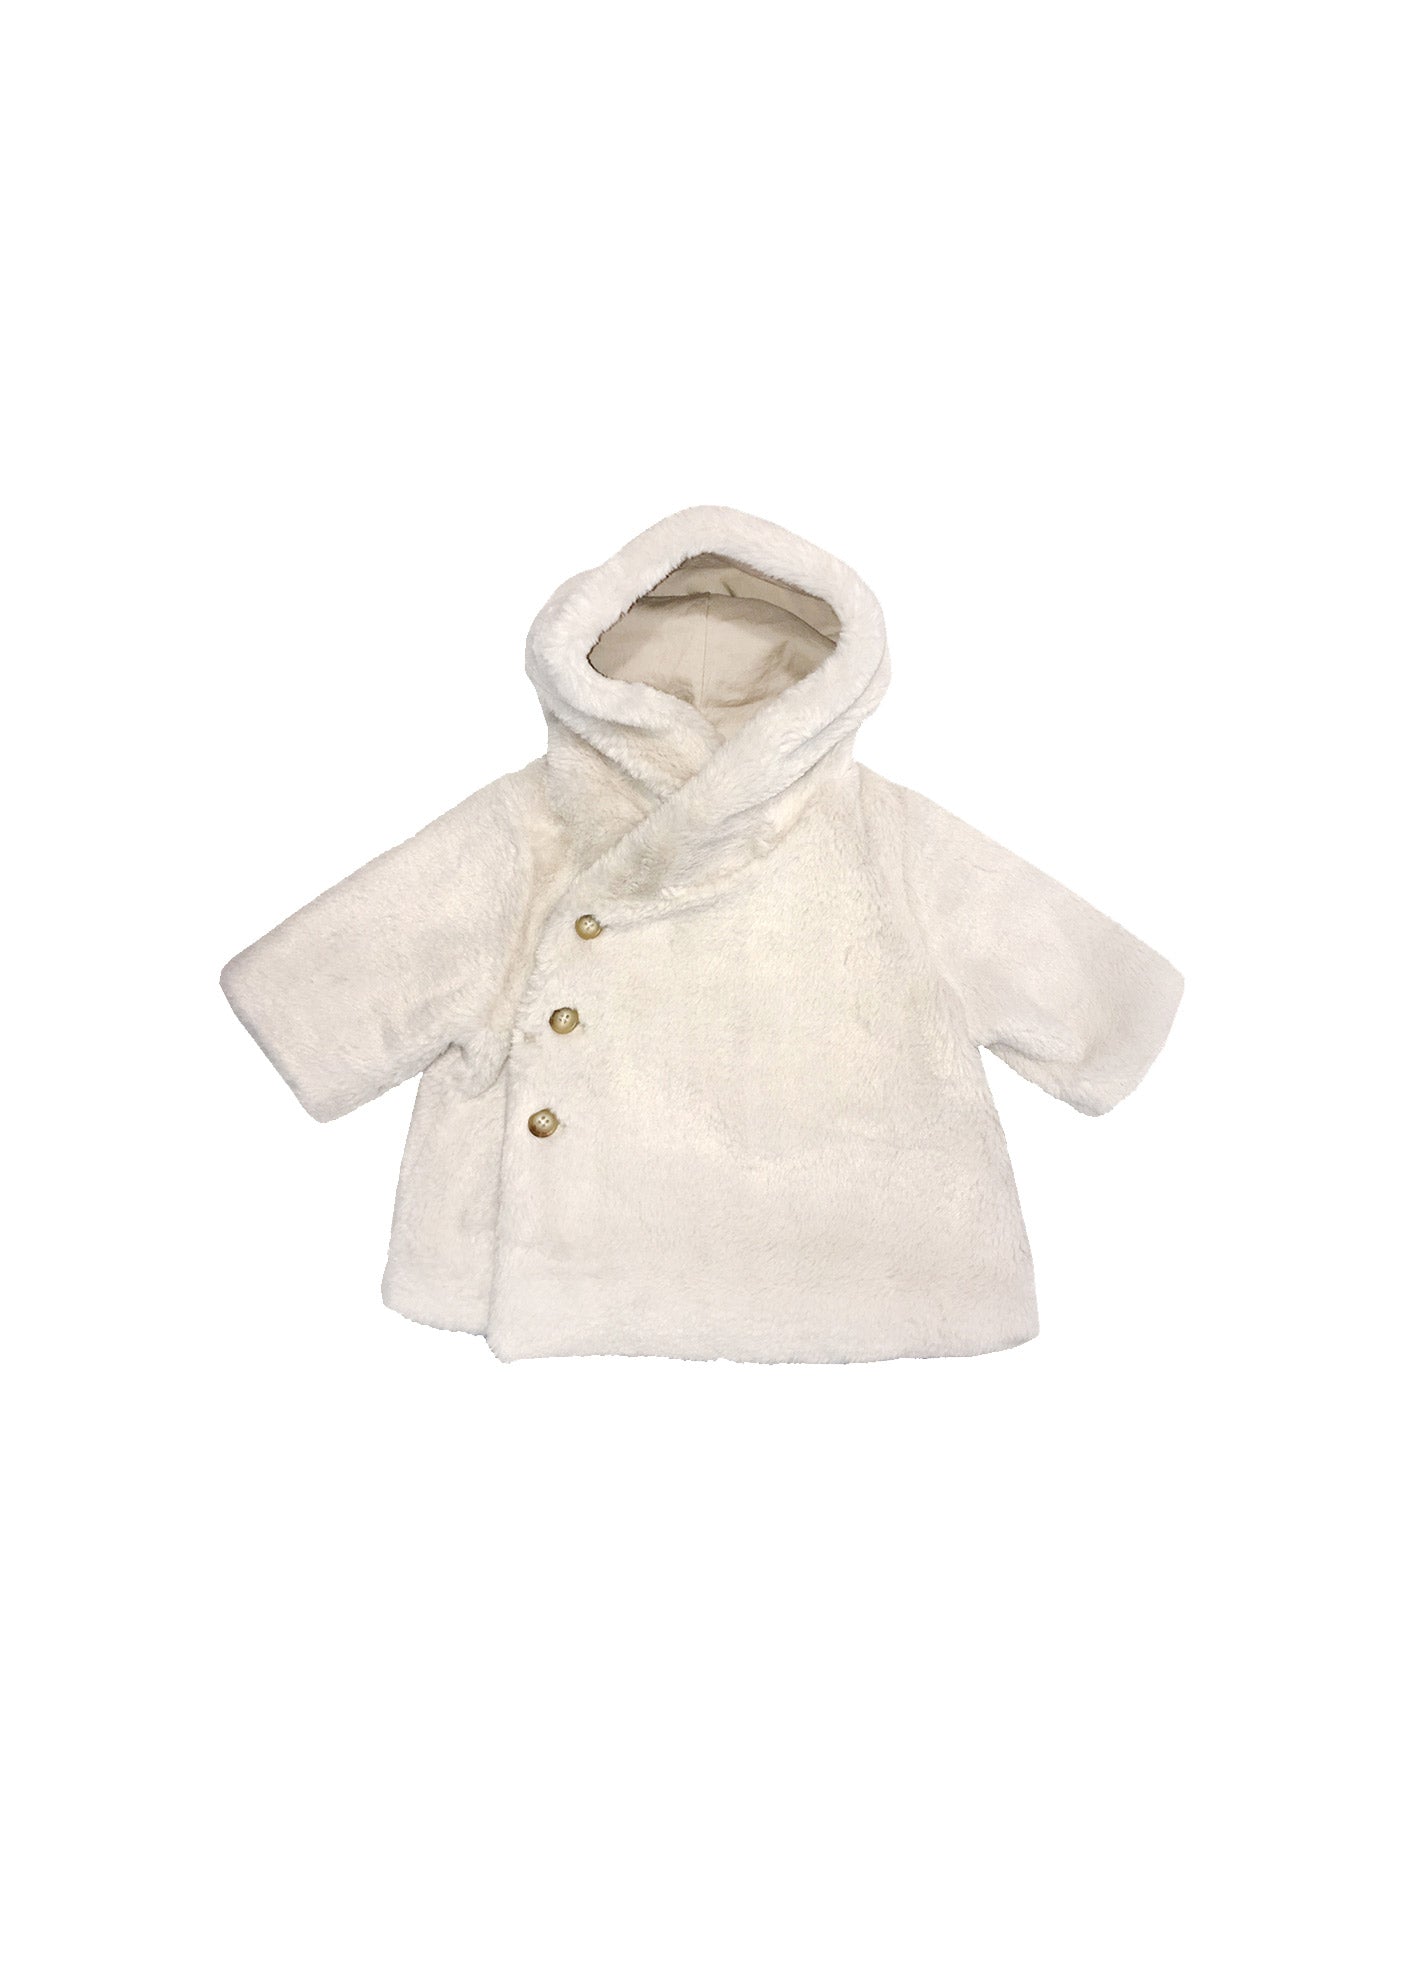 Baby Girls White Hooded Coat